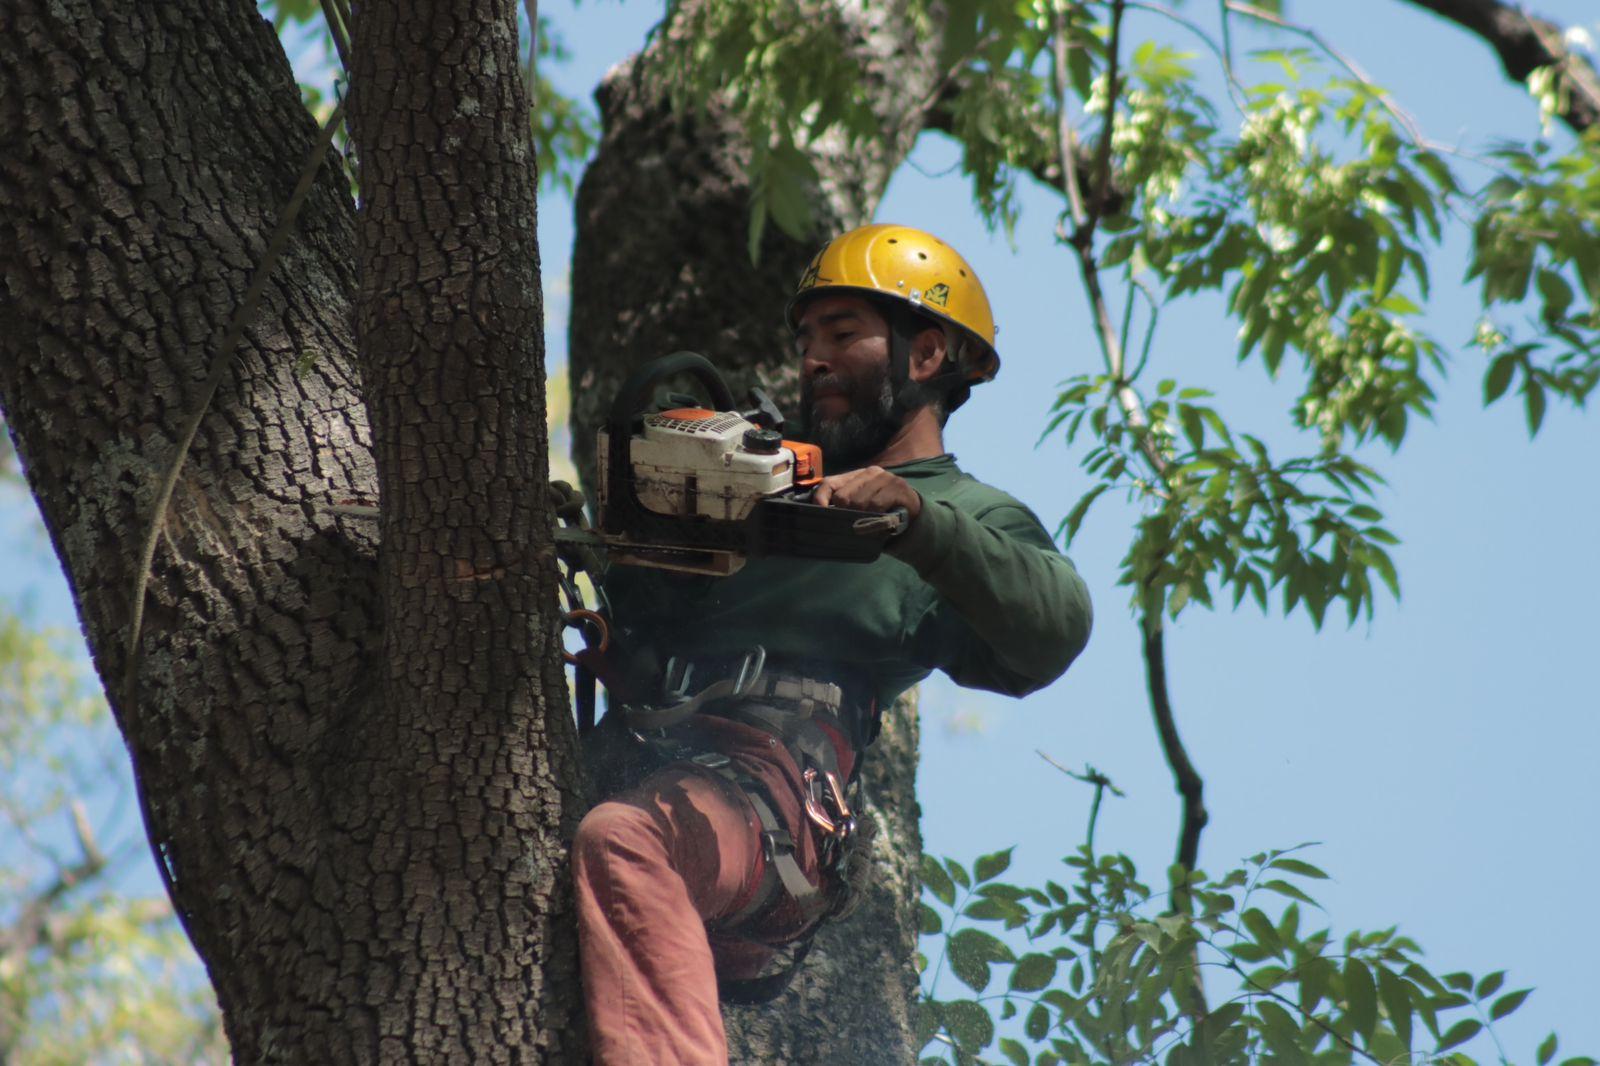 "Arborista", el oficio de podar los árboles desde las alturas